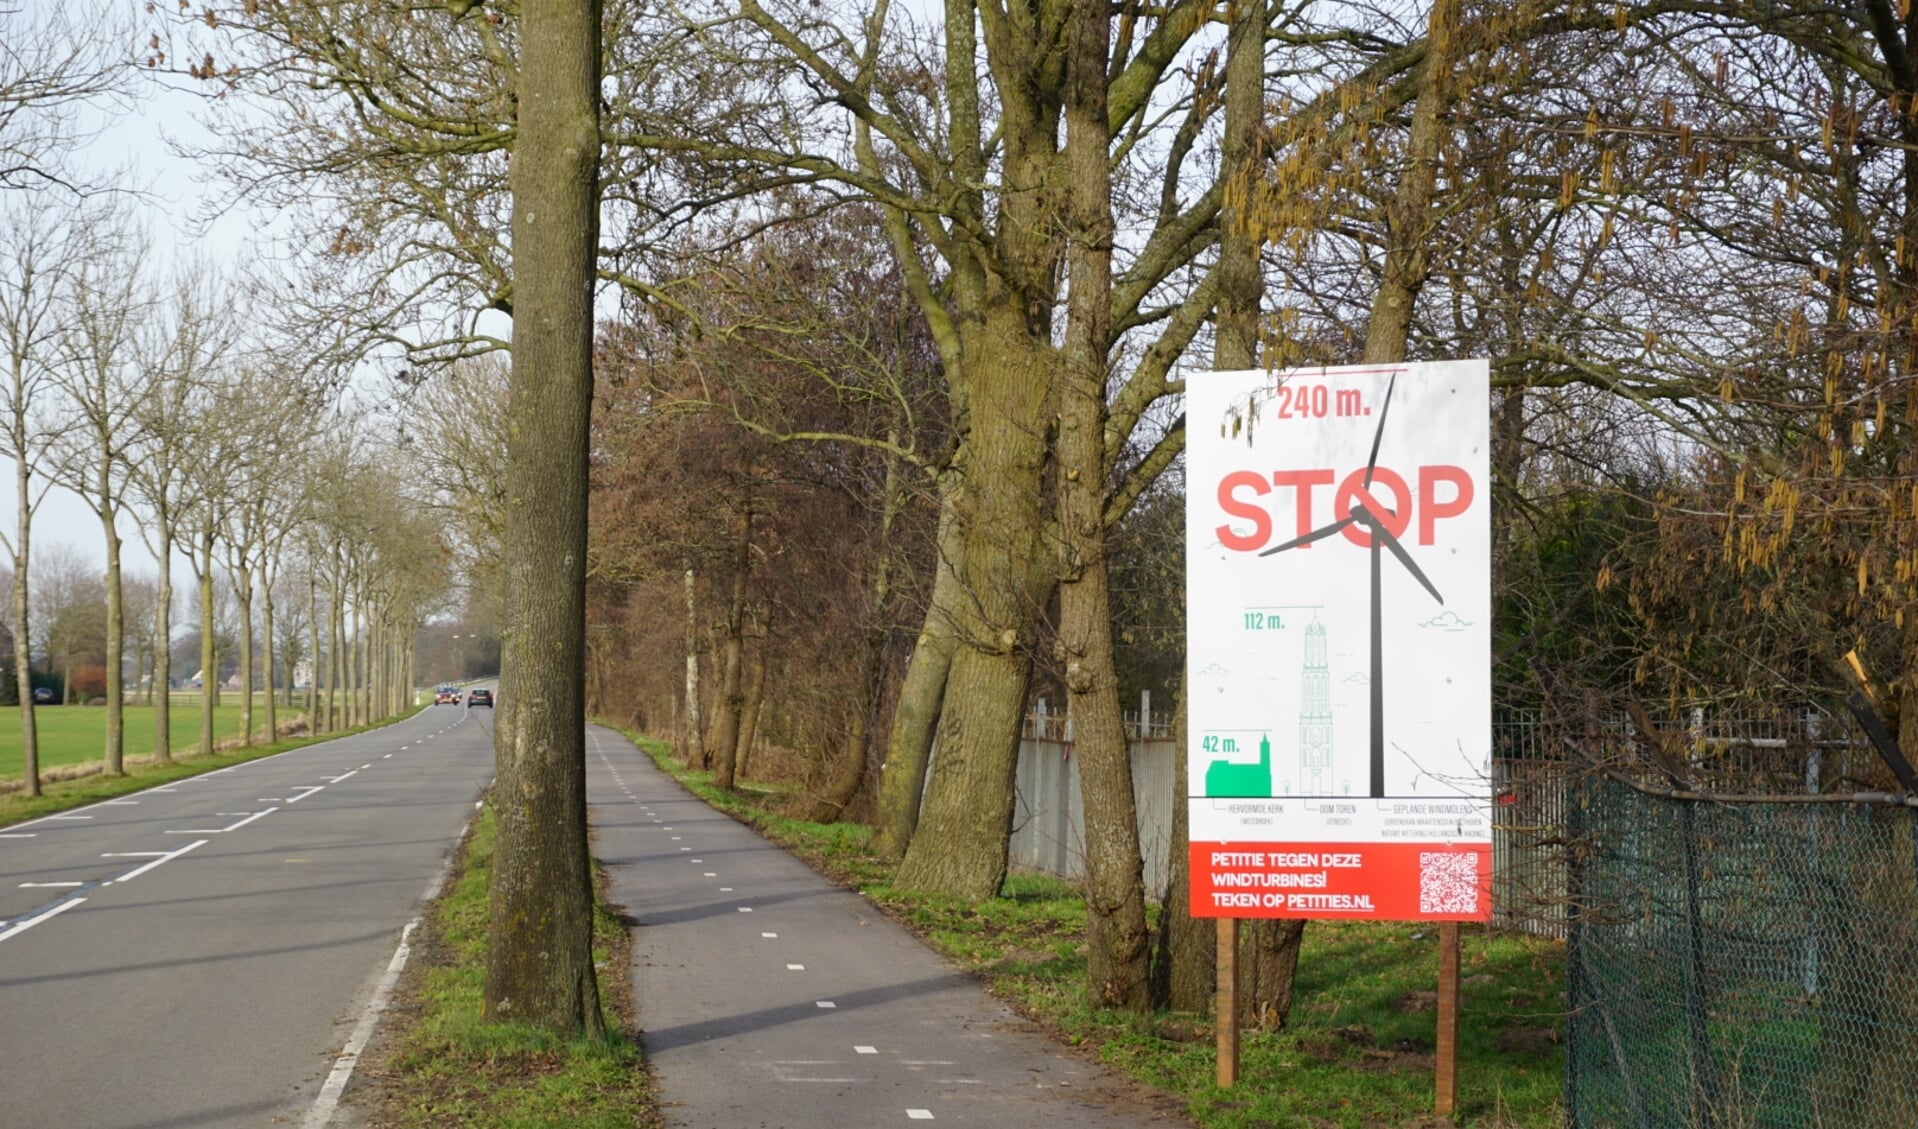 Met 1036 handtekeningen strijden de actievoerders tegen windturbines in Groenekan, de Nieuwe Wetering, Bilthoven voort